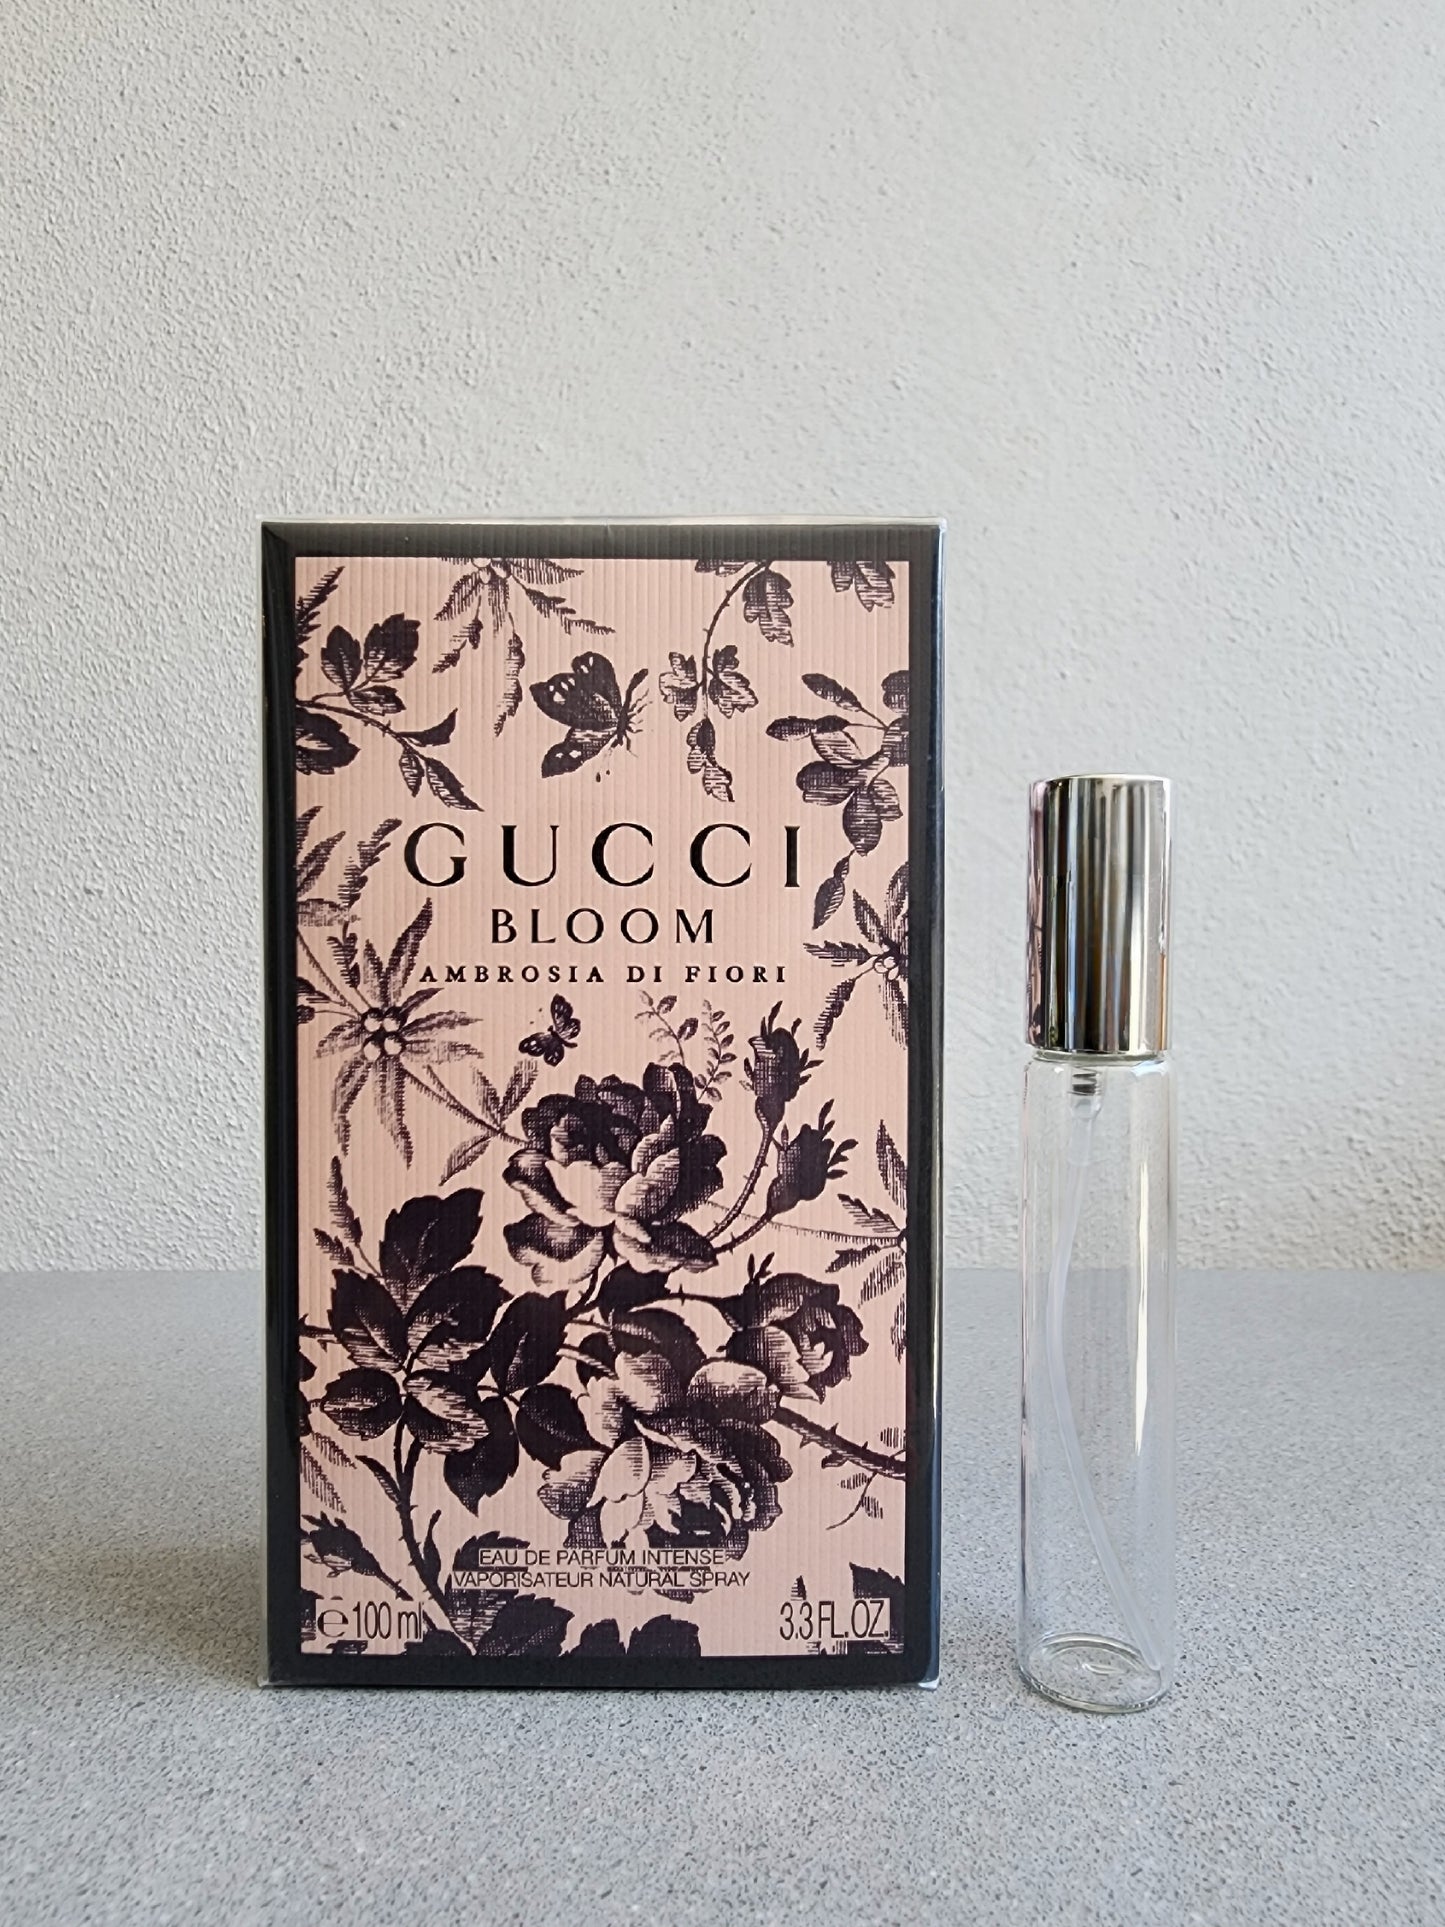 – Ambrosia & Gucci Bloom Belle Fiori Bloom Di EDP Fragrances